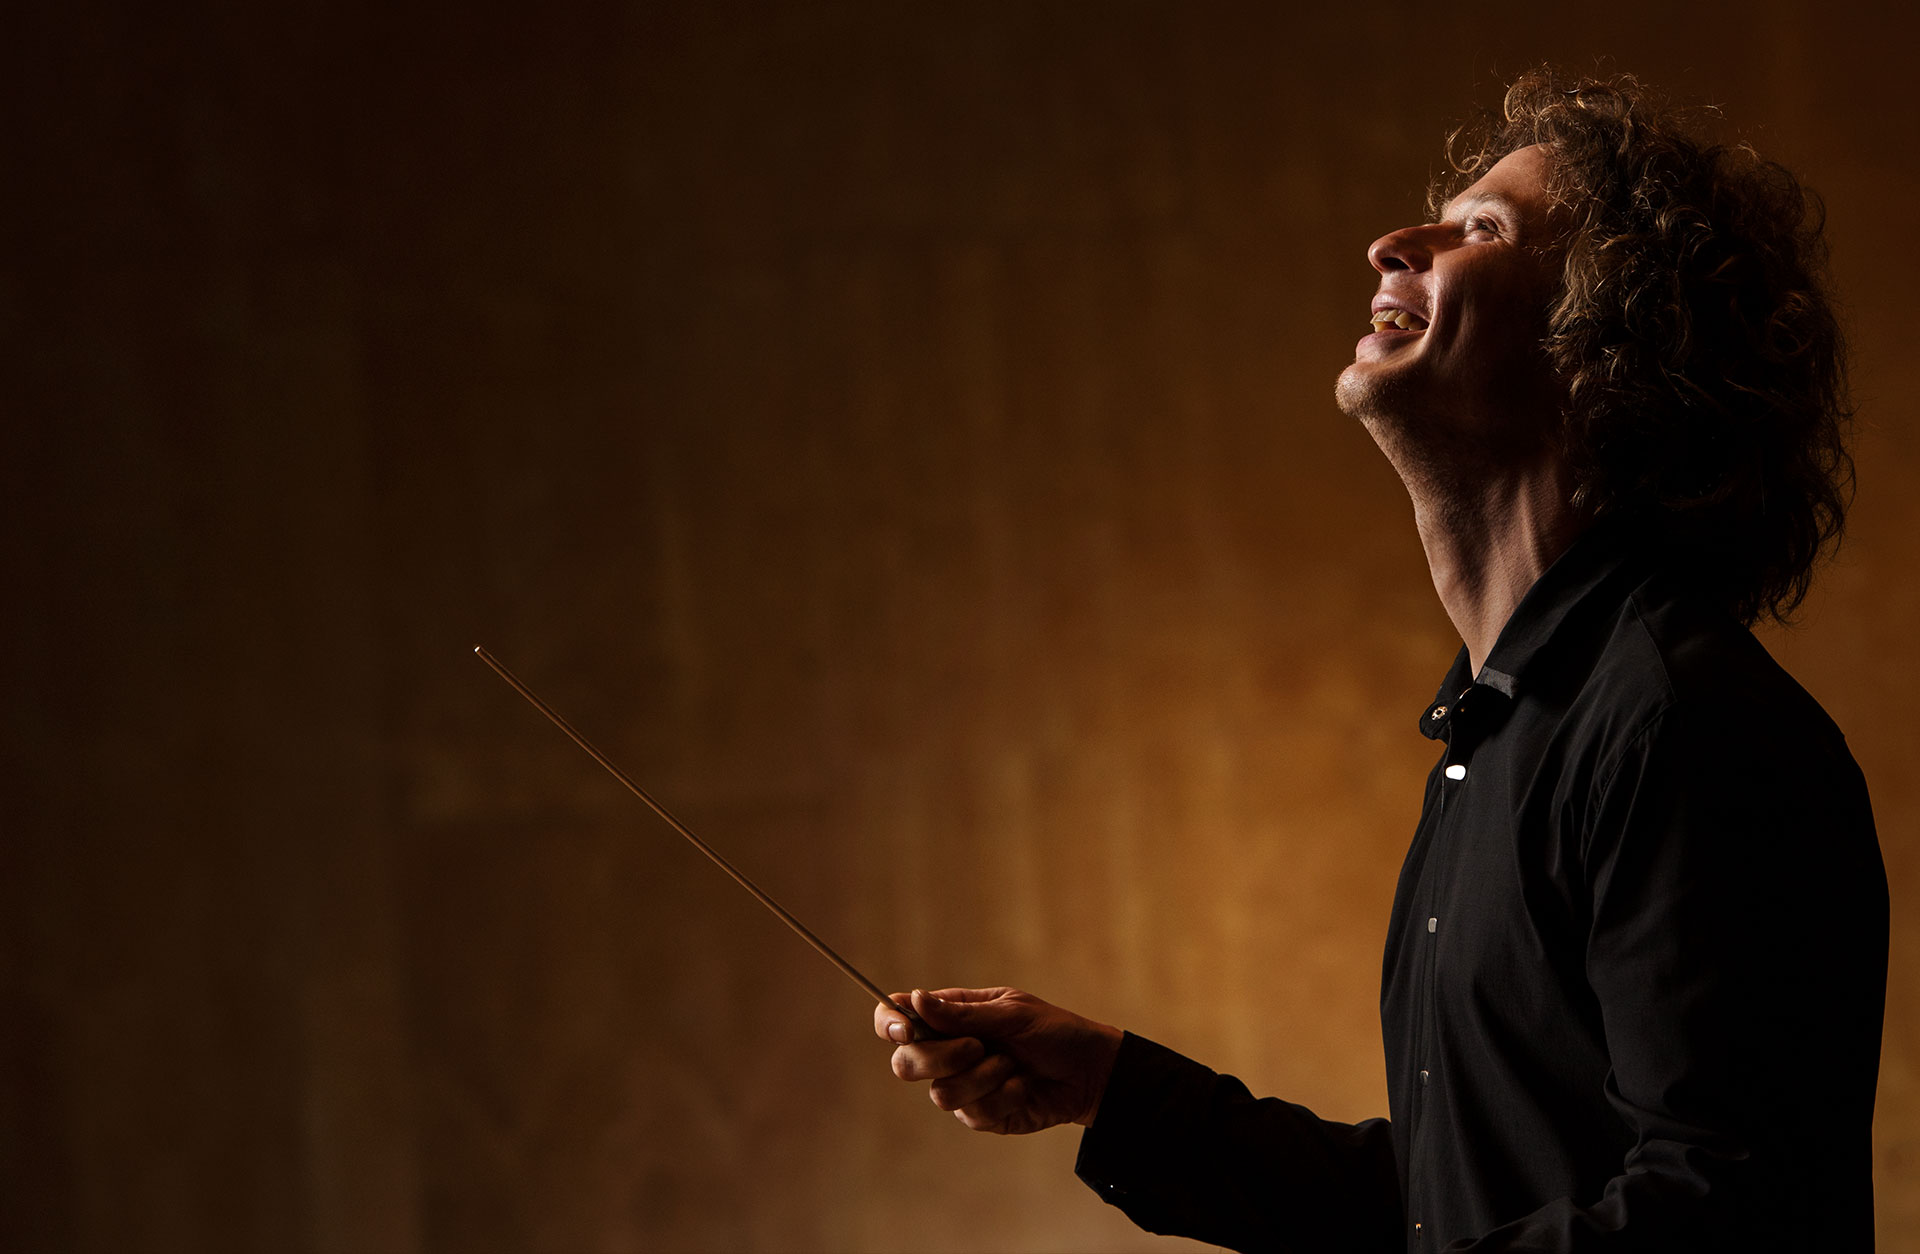 Santtu-Matias Rouvali står i profil med en dirigentpinne. Mörkt klädd mot ljusare, brungul bakgrund.